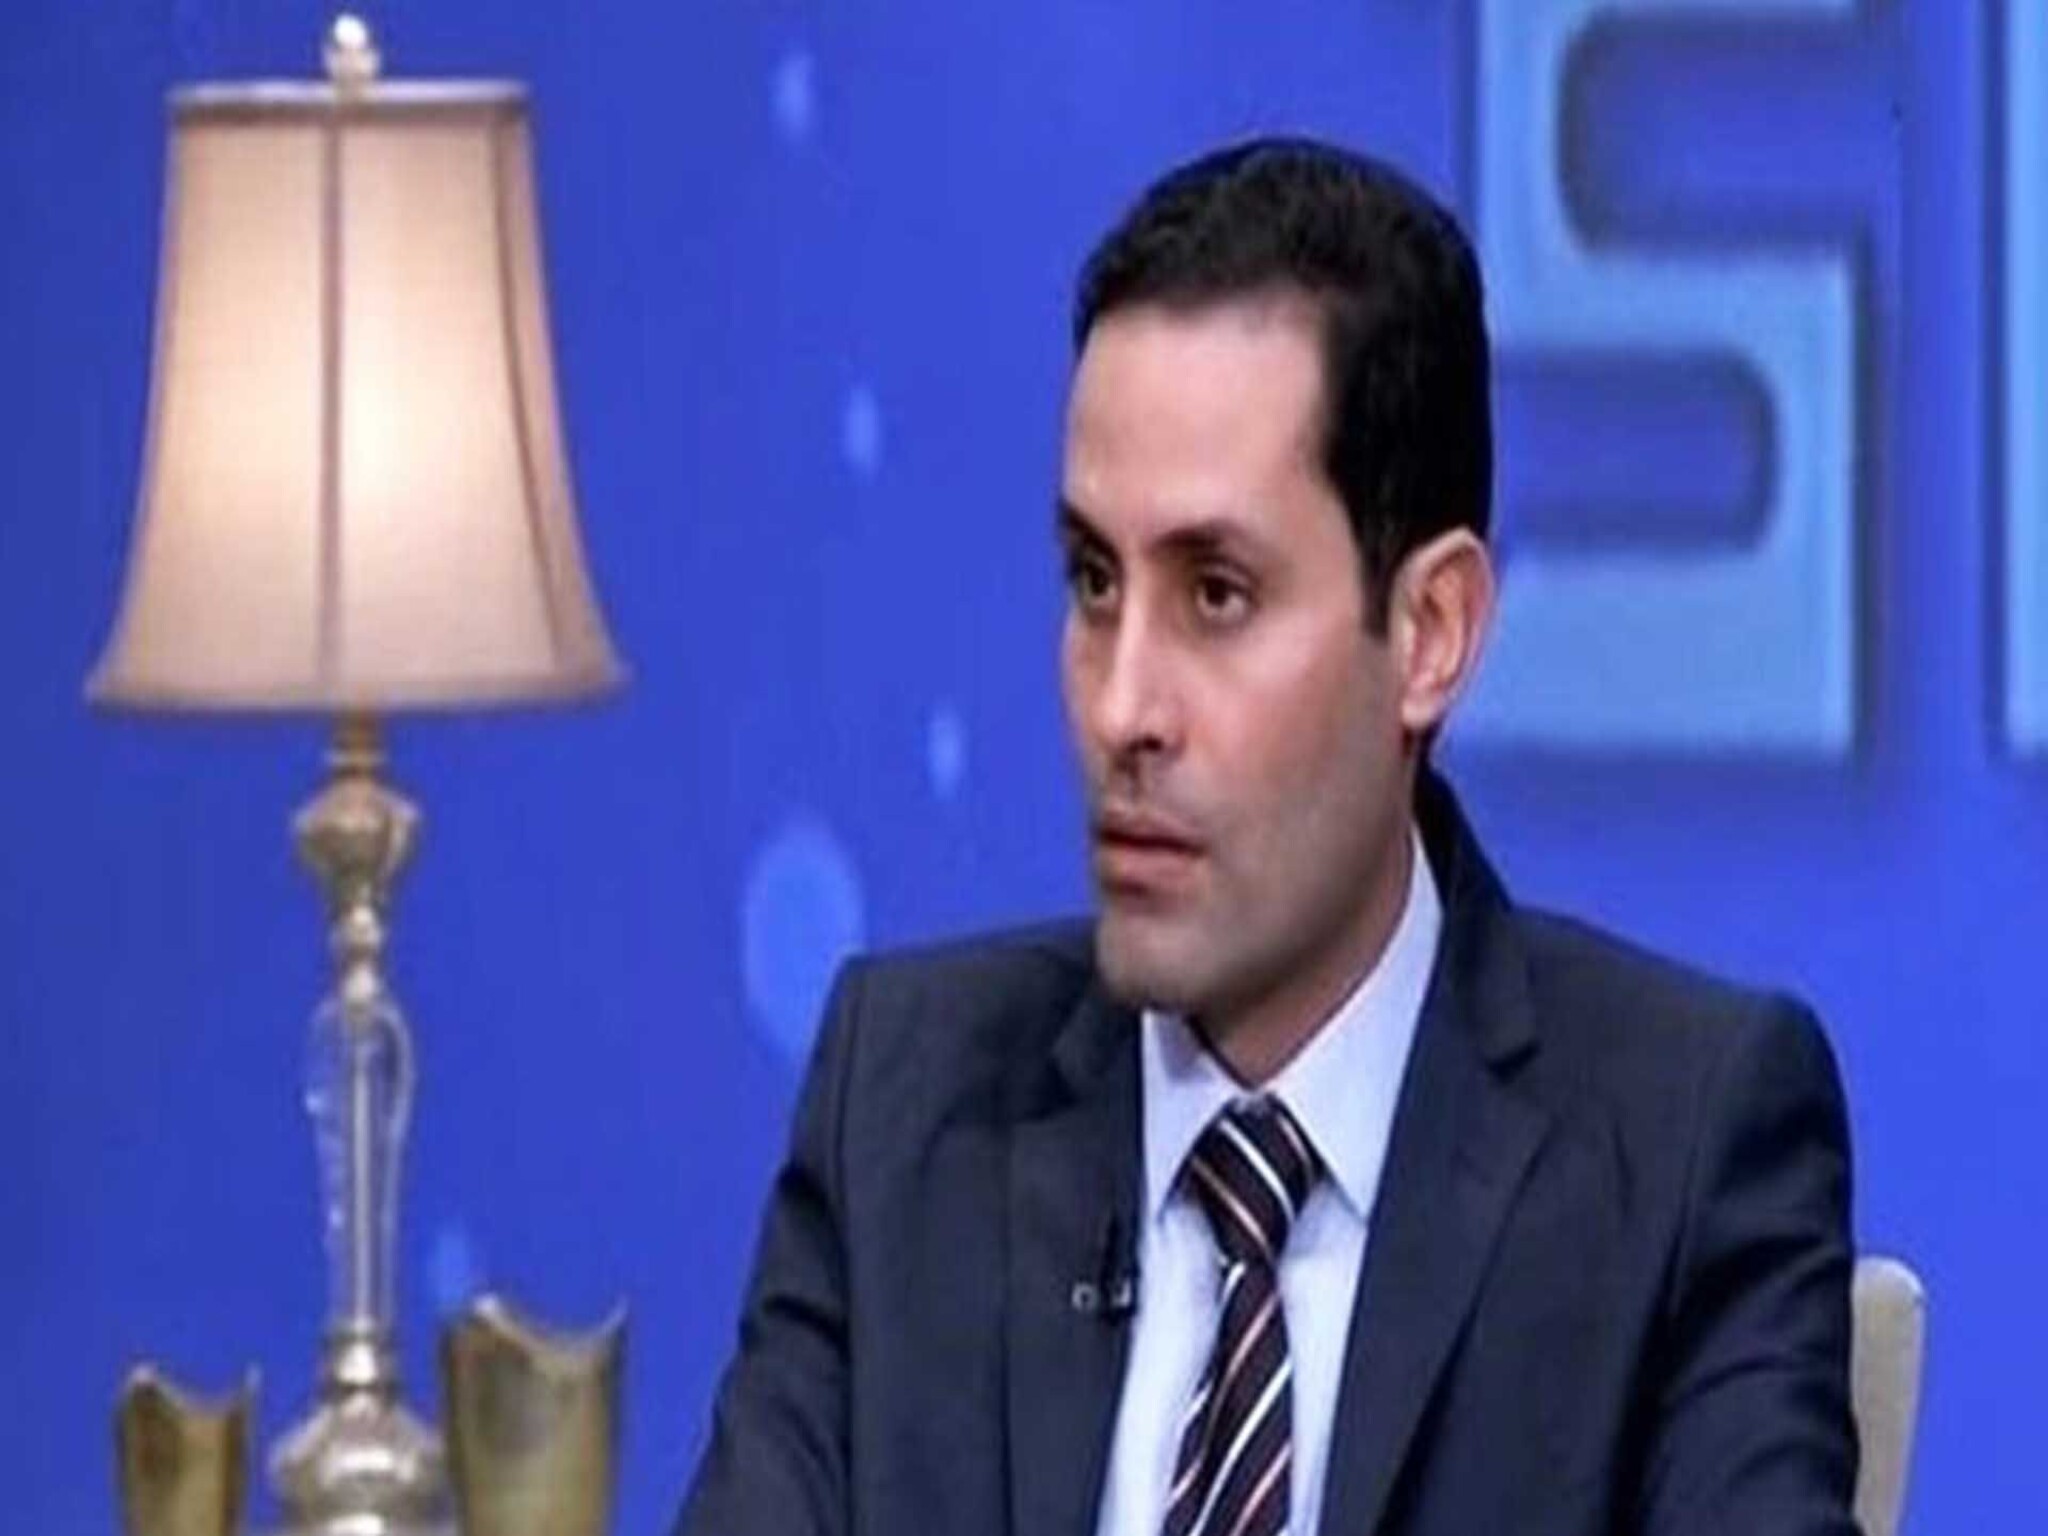 يعتزم الترشح للإنتخابات الرئاسة ...عودة البرلماني أحمد طنطاوي لمصر